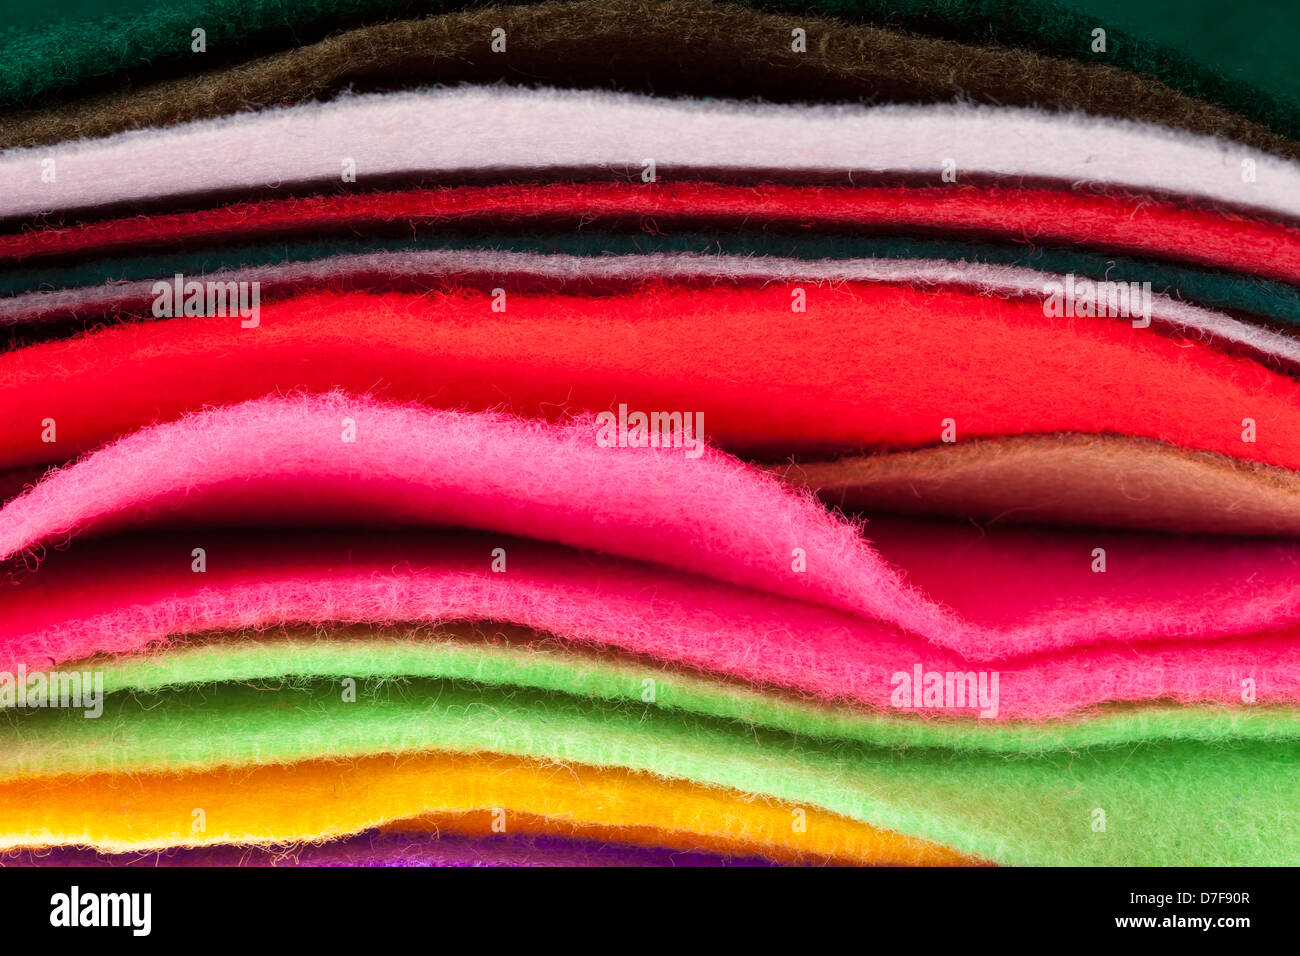 L'impression des feuilles de tissu de différentes couleurs entassés dans une pile. Banque D'Images